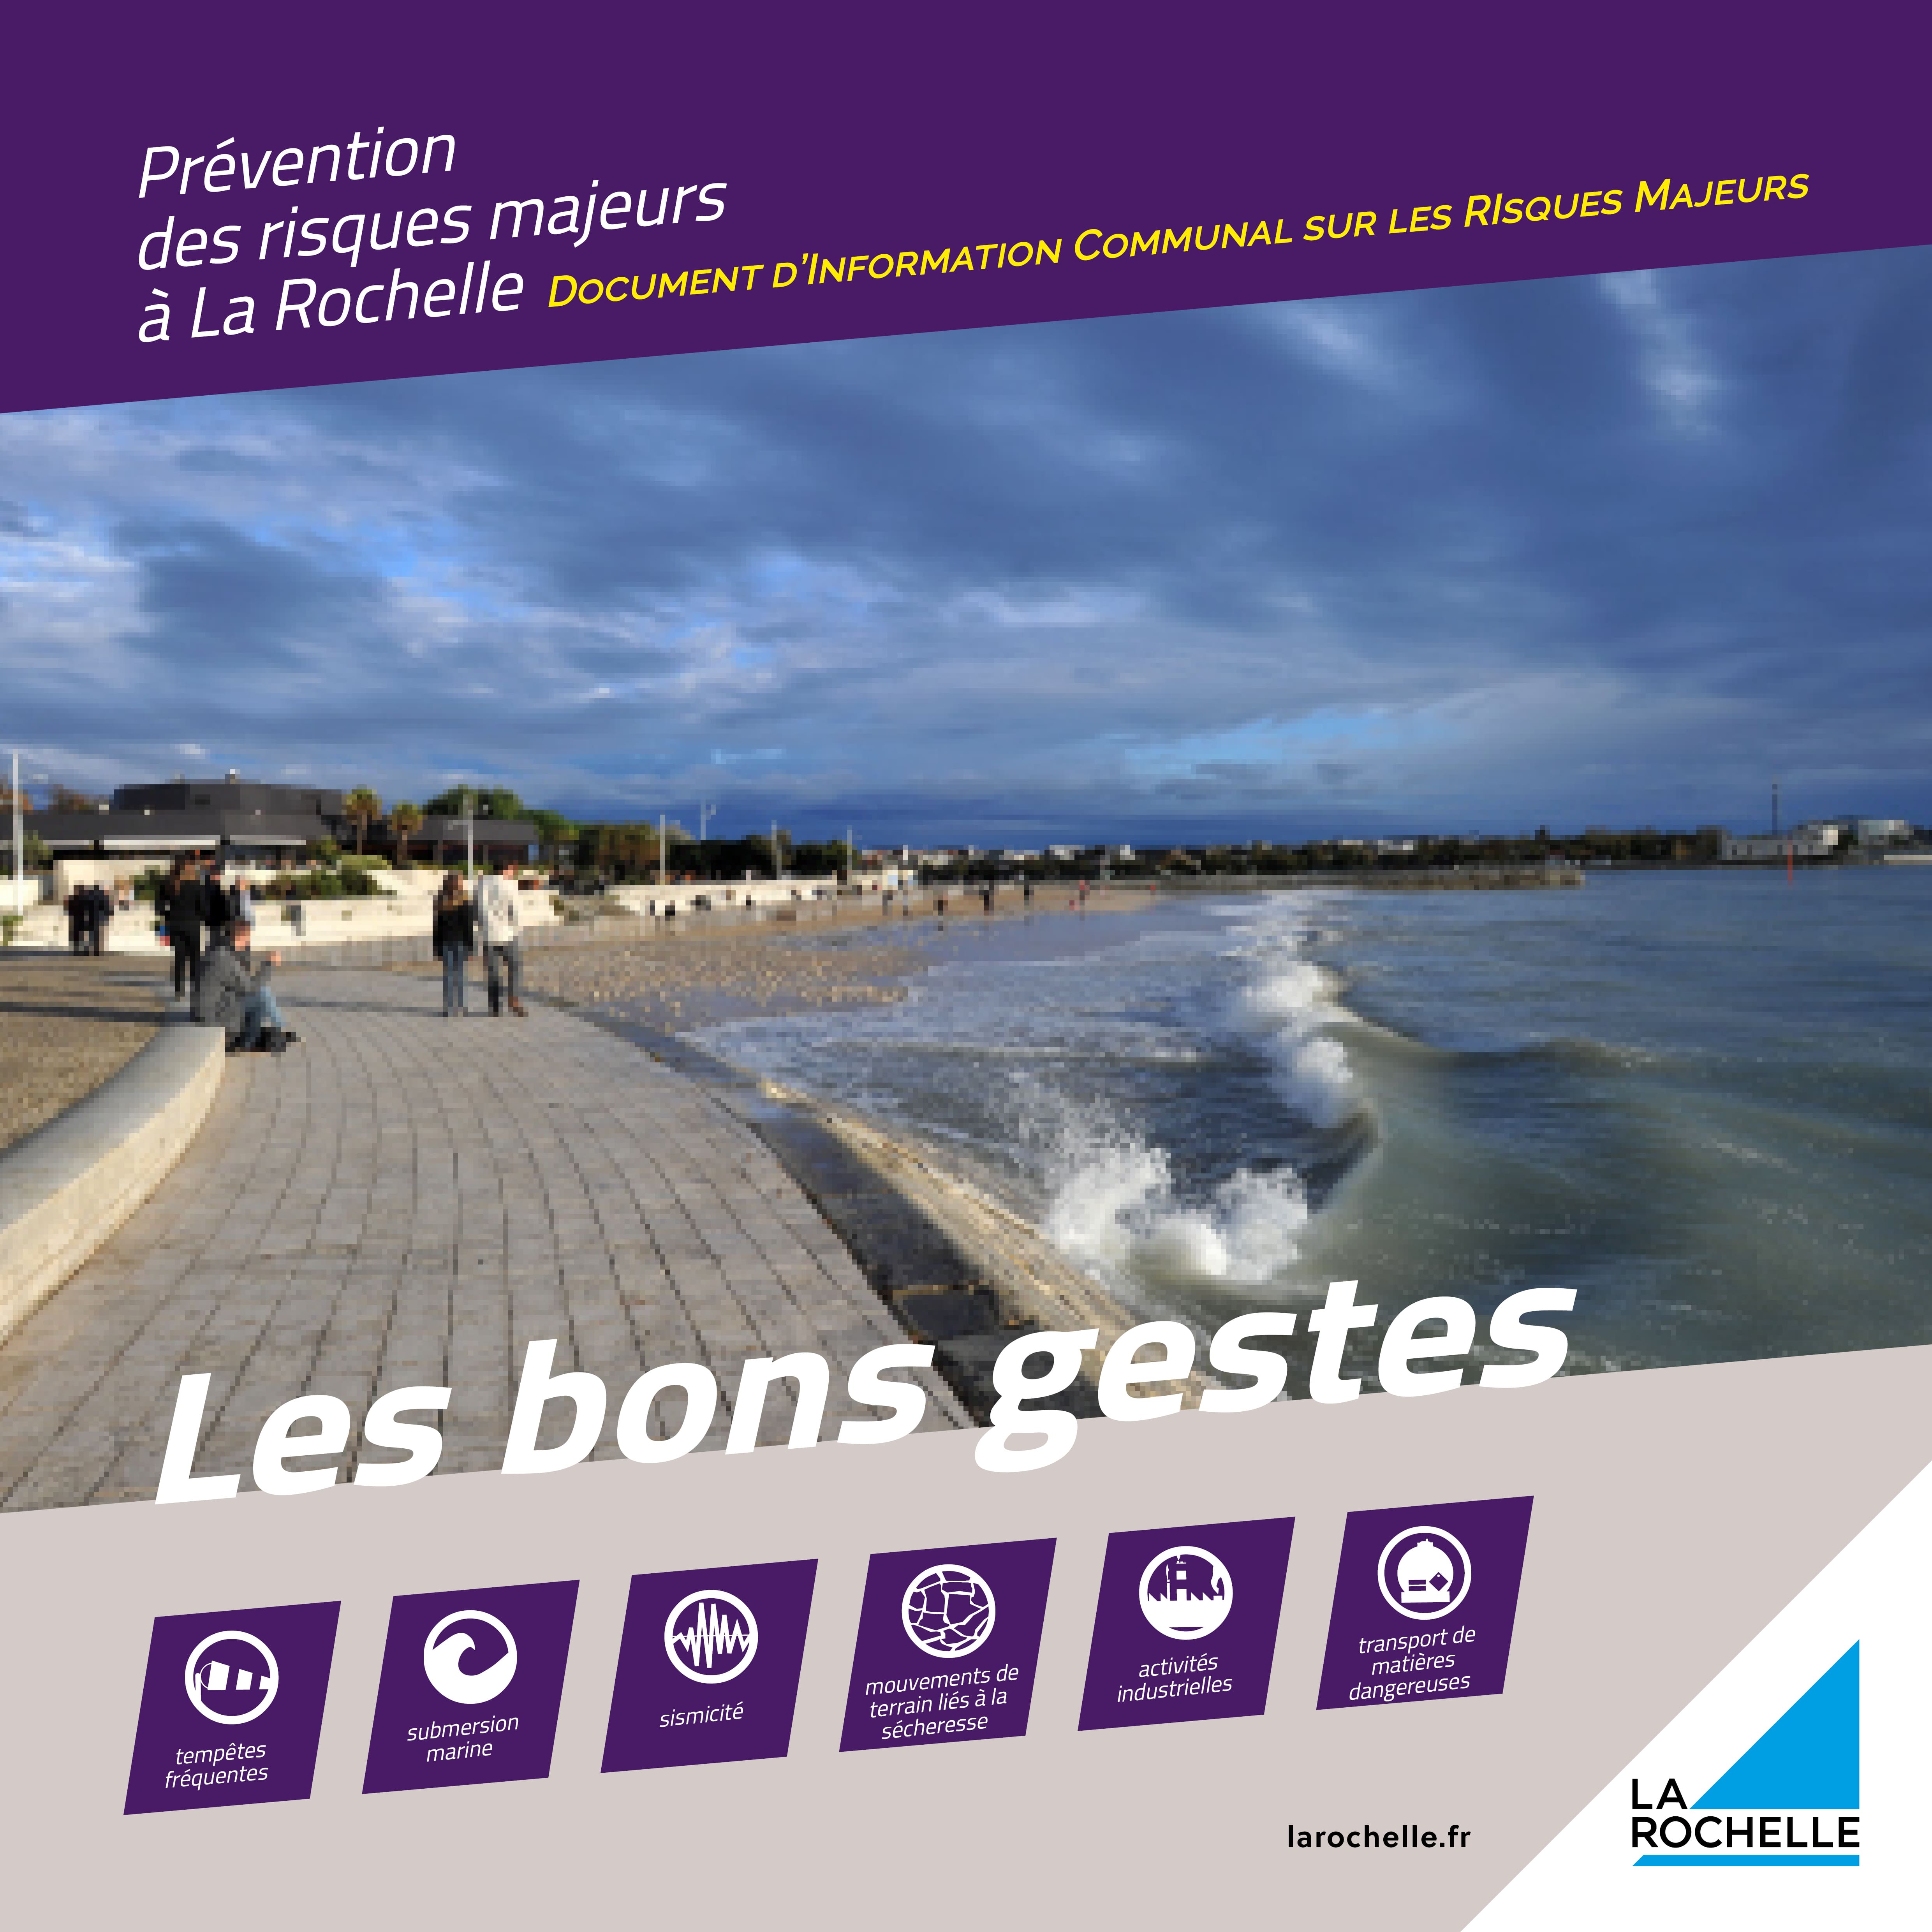 Couverture du document d’information communal sur la prévention des risques majeurs à La Rochelle, où figurent les bons gestes à adopter face aux différents risques.